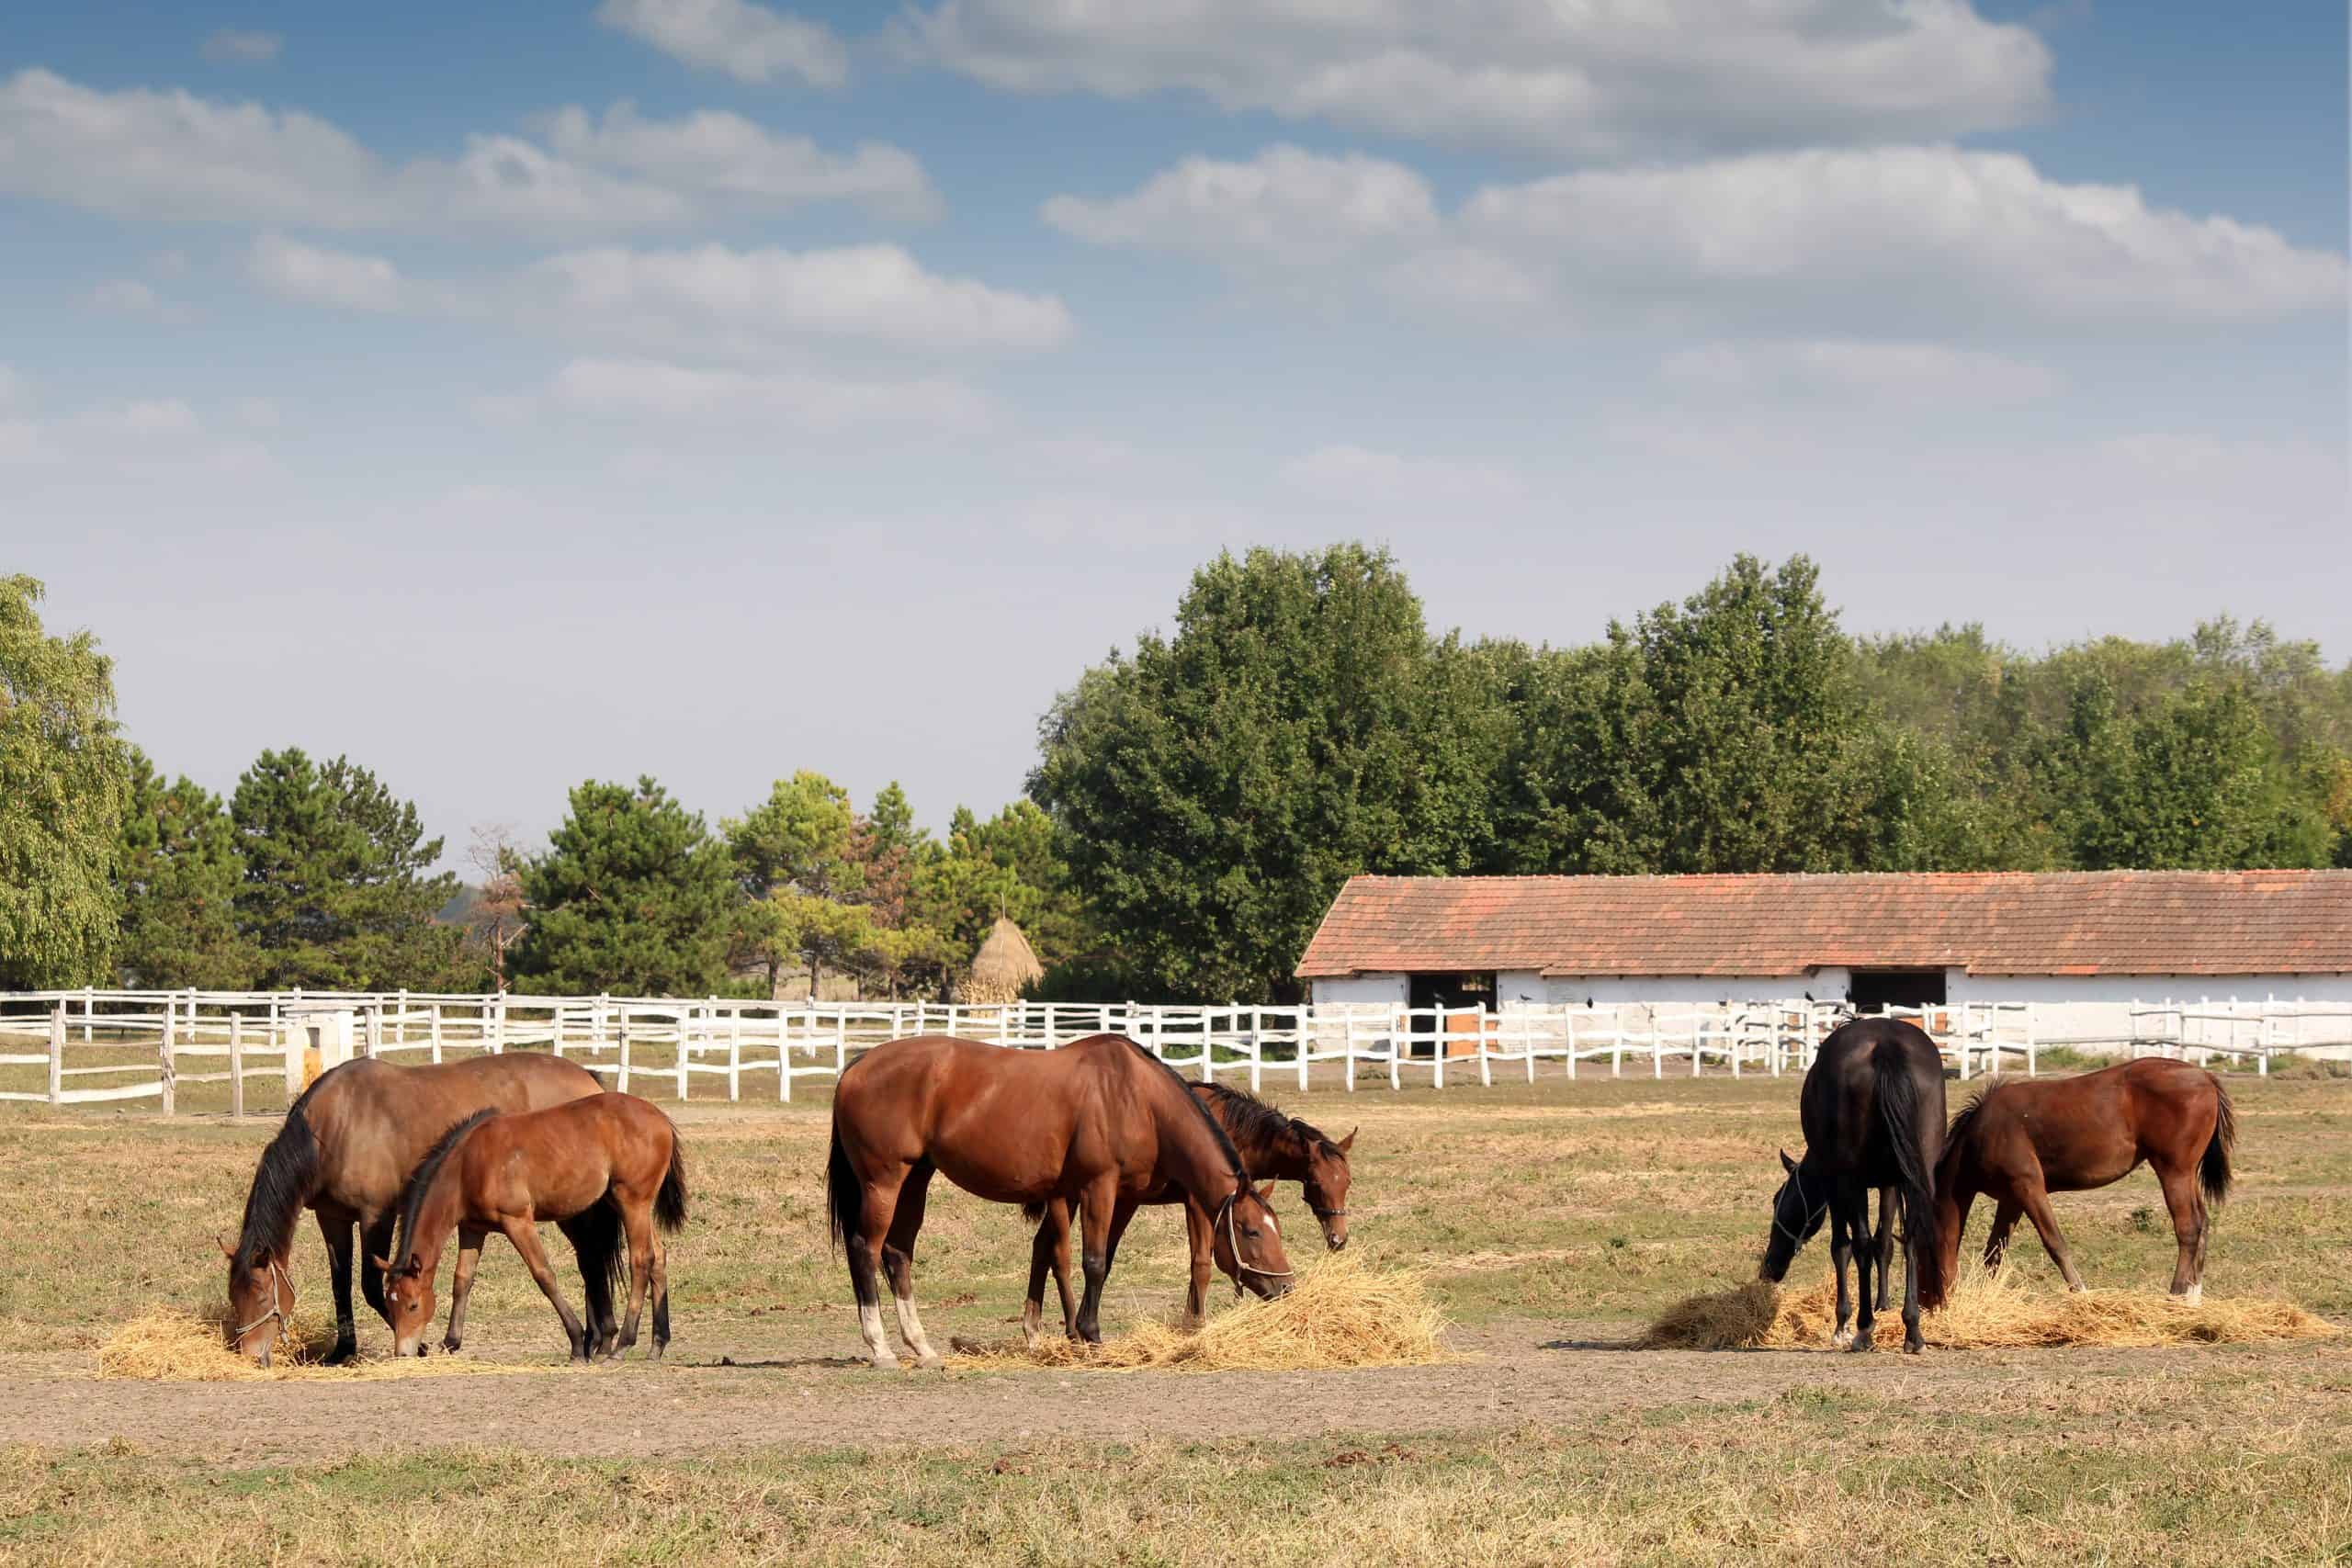 horses in corral farm scene